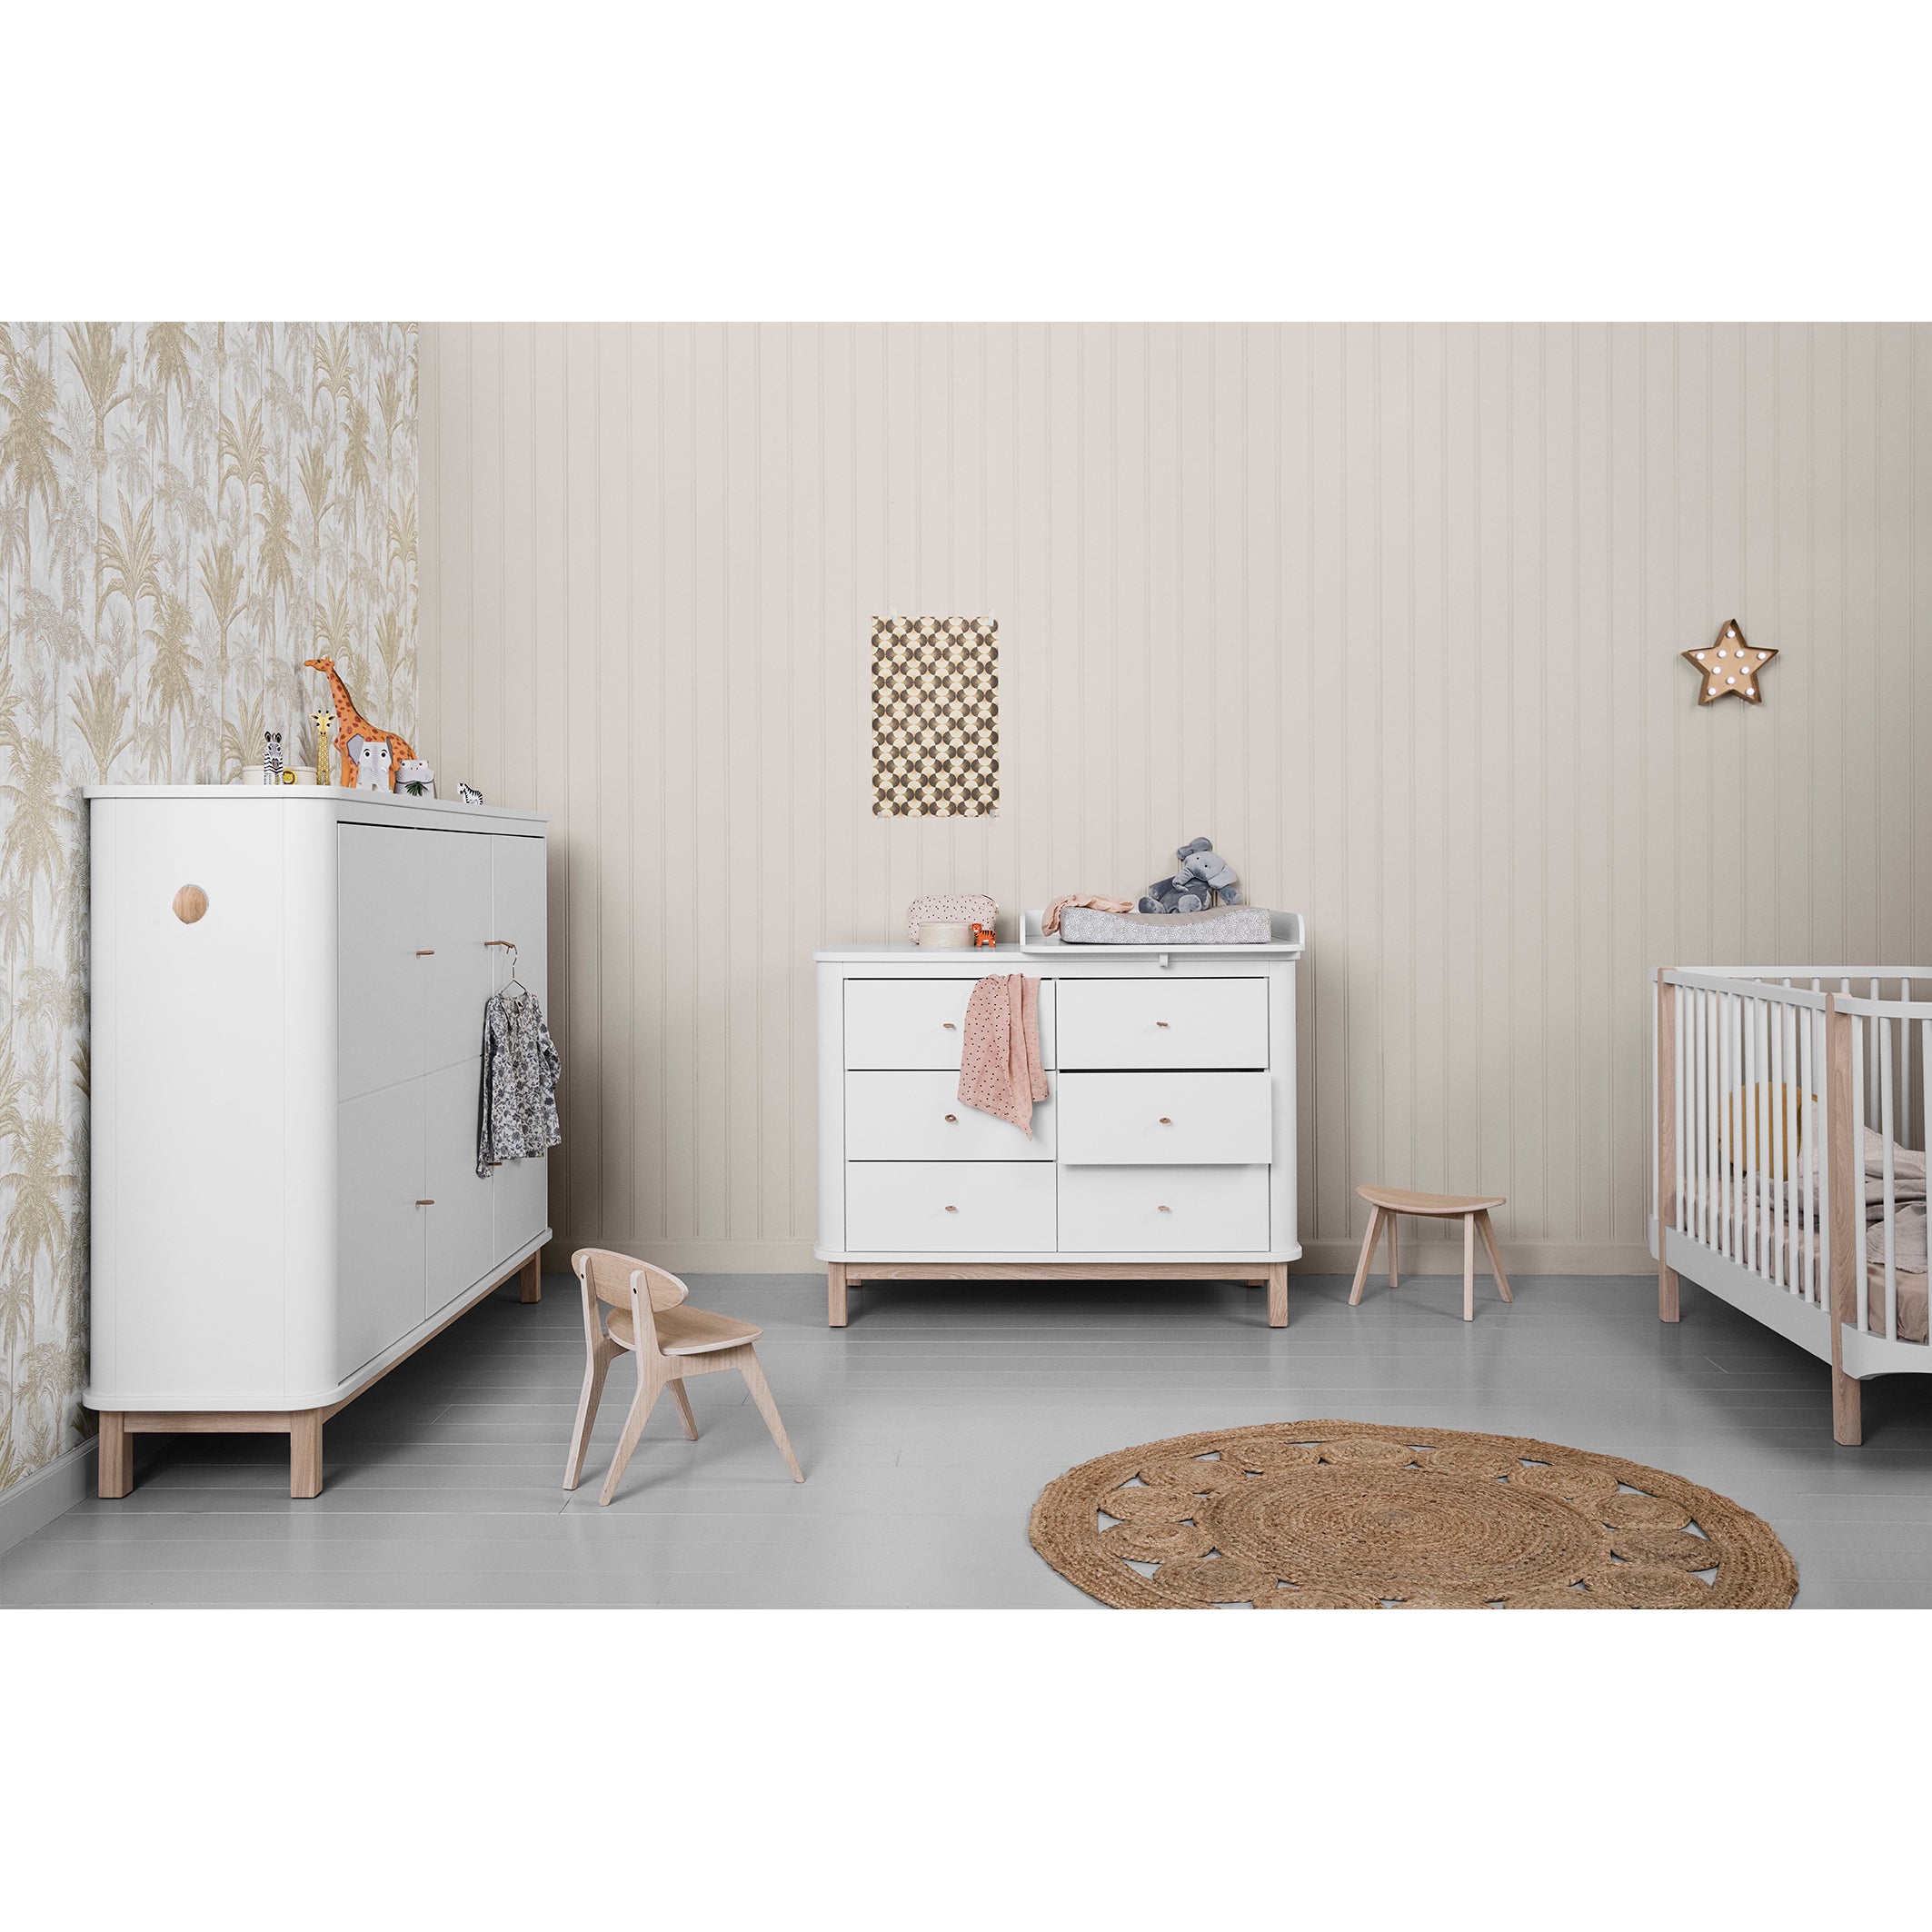 Oliver Furniture Wood 嬰兒床 白色配橡木色